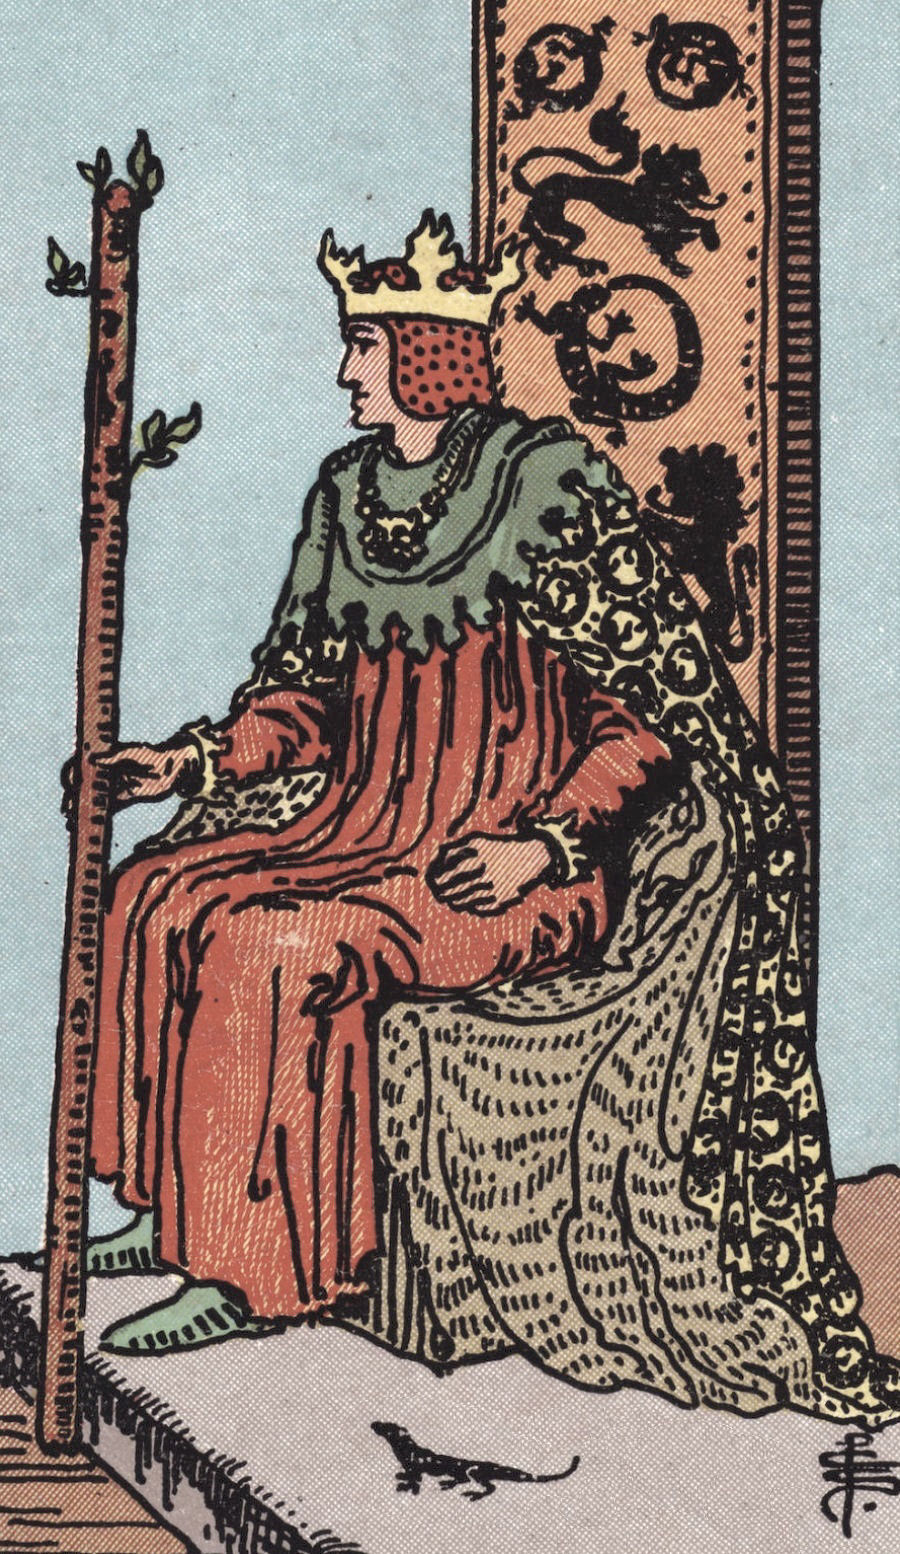 Incandescent Tarot - King Wands Tarot Card Meaning